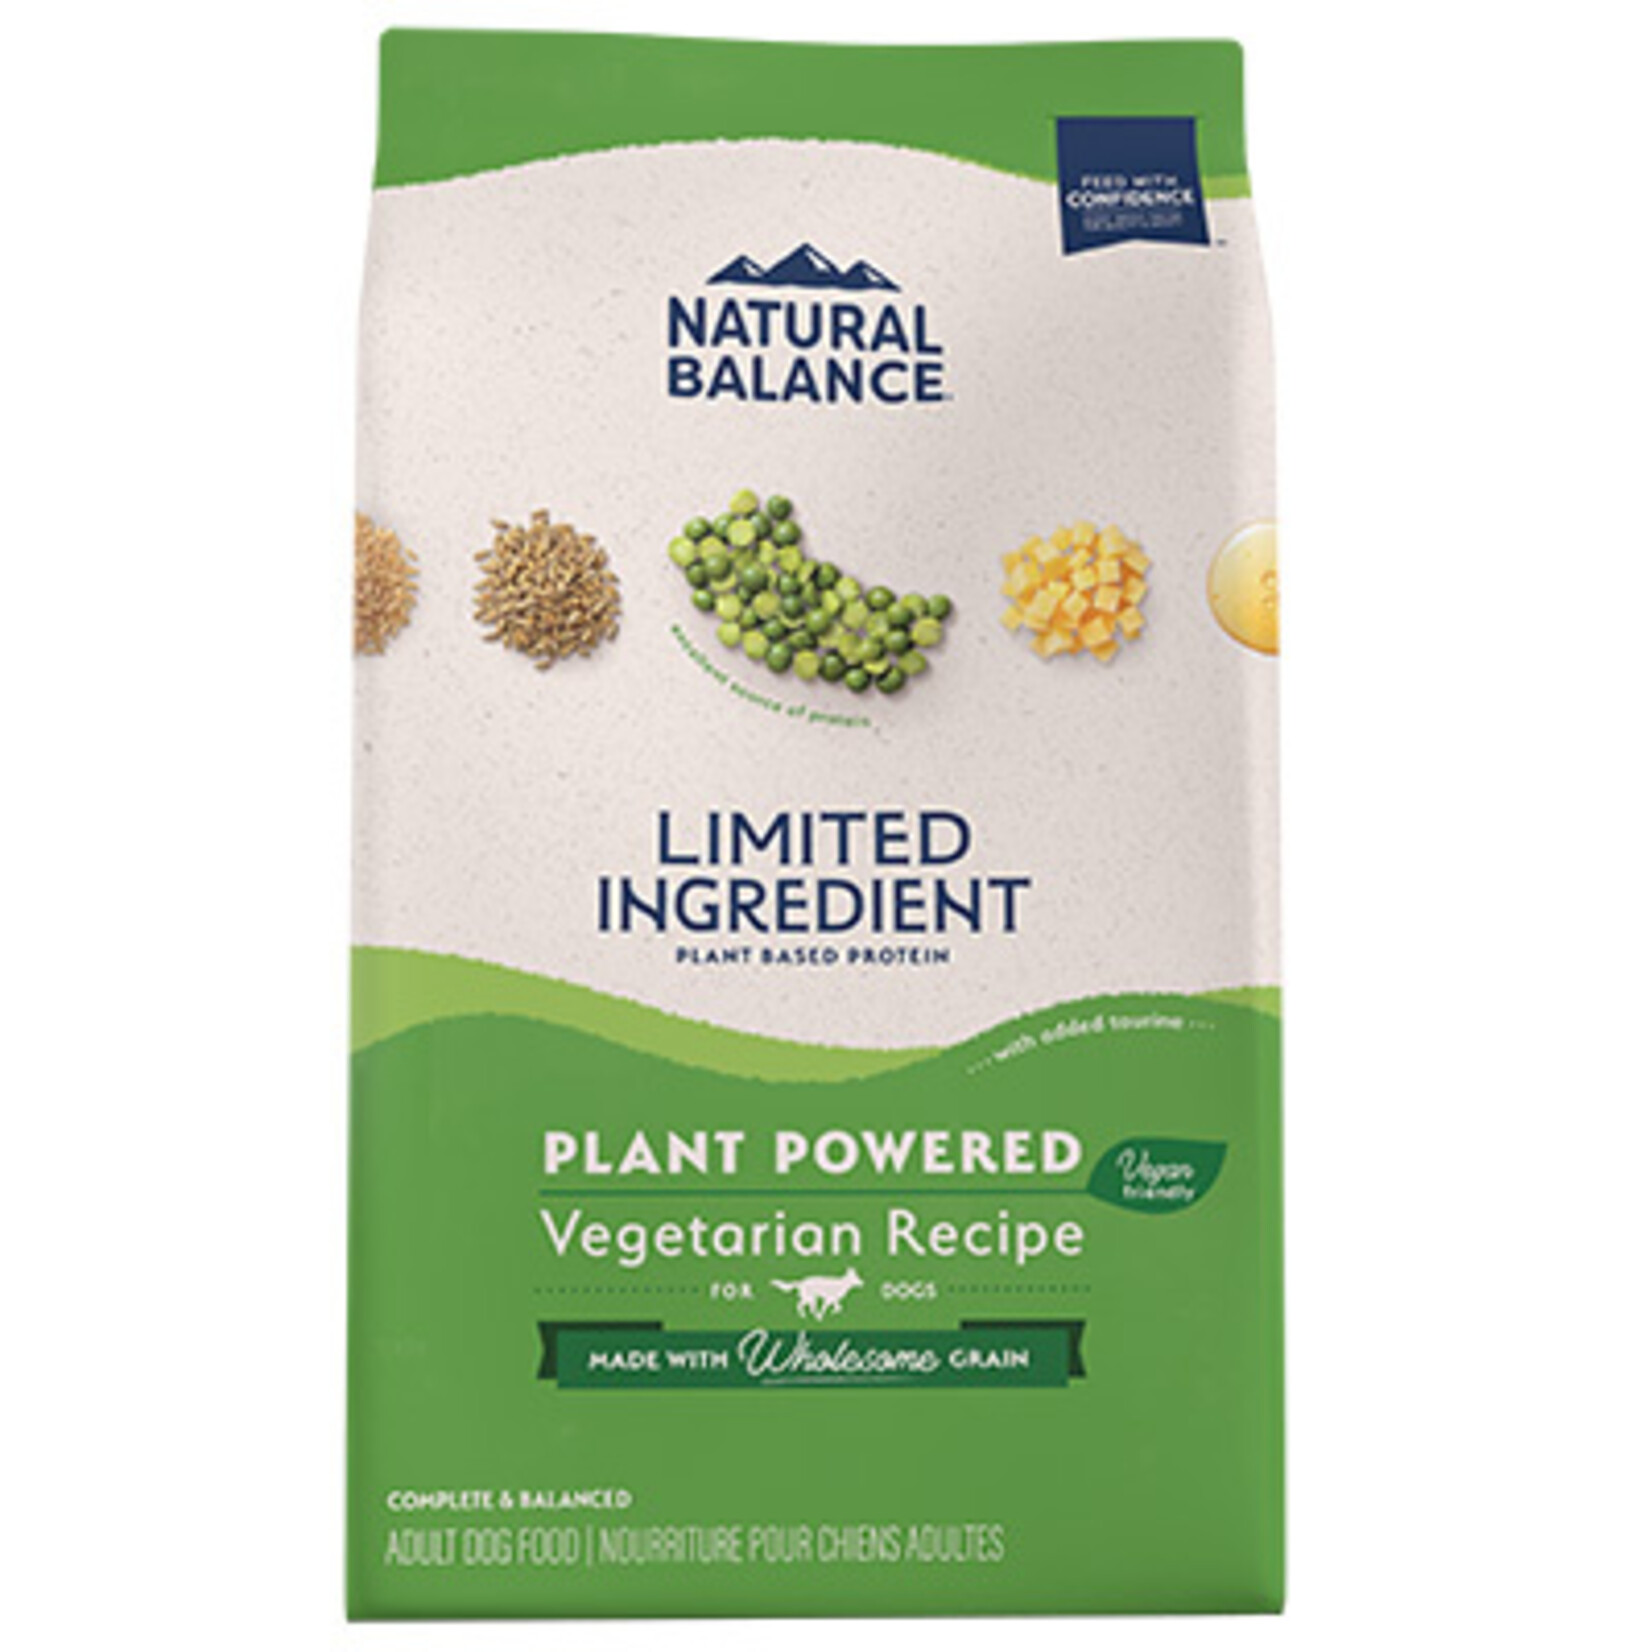 Natural Balance Natural Balance Dry Dog Food Limited Ingredient Vegetarian Recipe